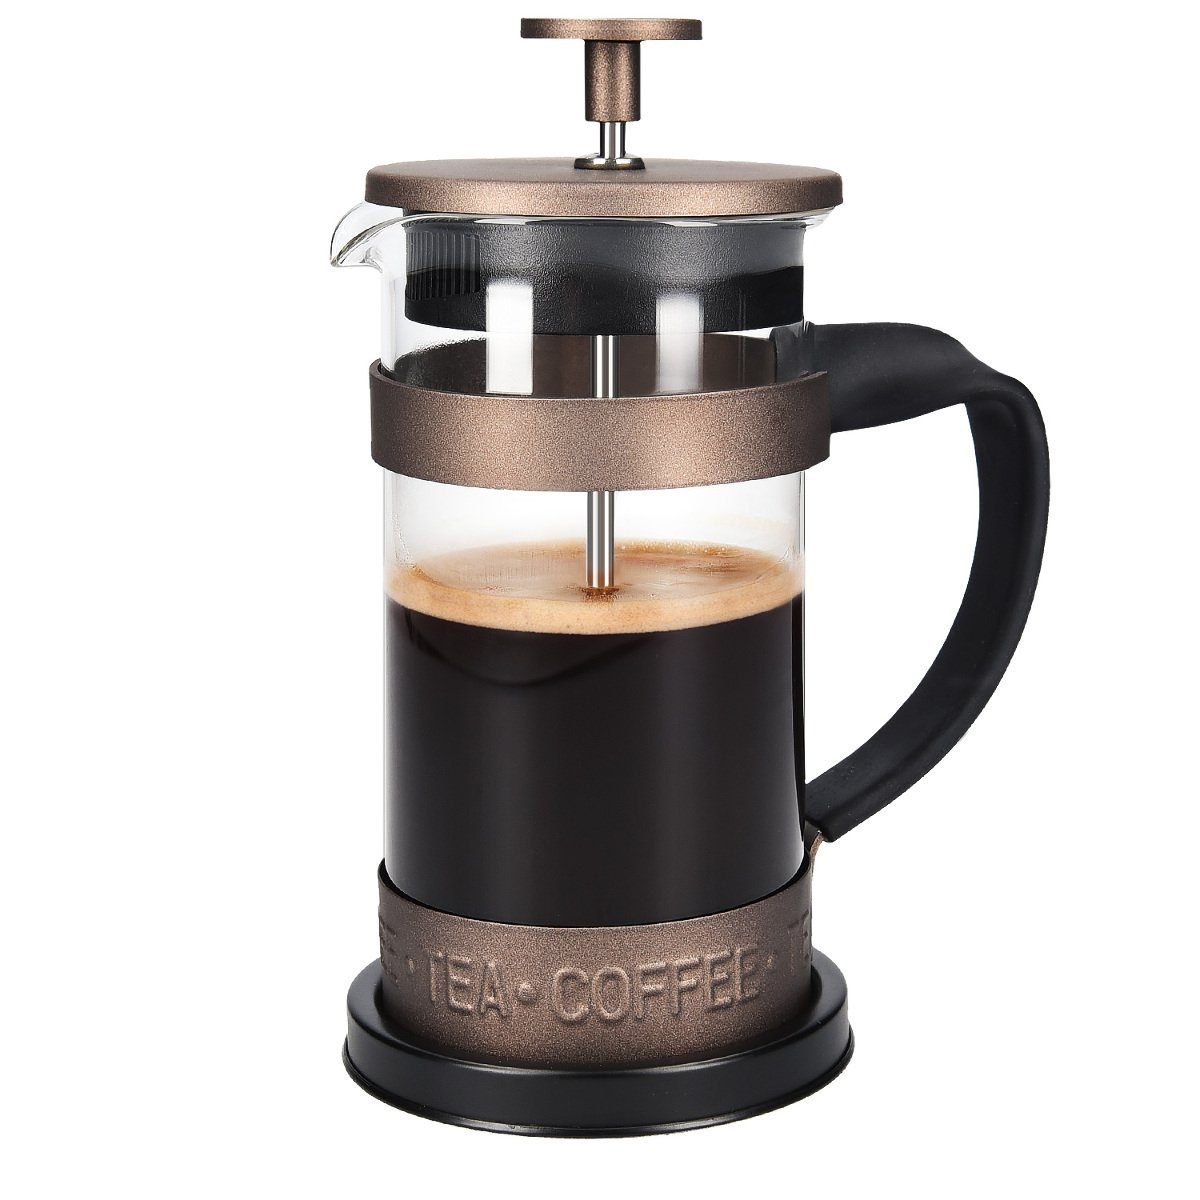 schwarz/silber Xavax Kaffee French Press aus Glas Kaffeebereiter 0,6 Liter, Edelstahlfilter, Kaffeezubereiter mit Sieb, eingebauter Kalkfilter, Kaffee-Bereiter